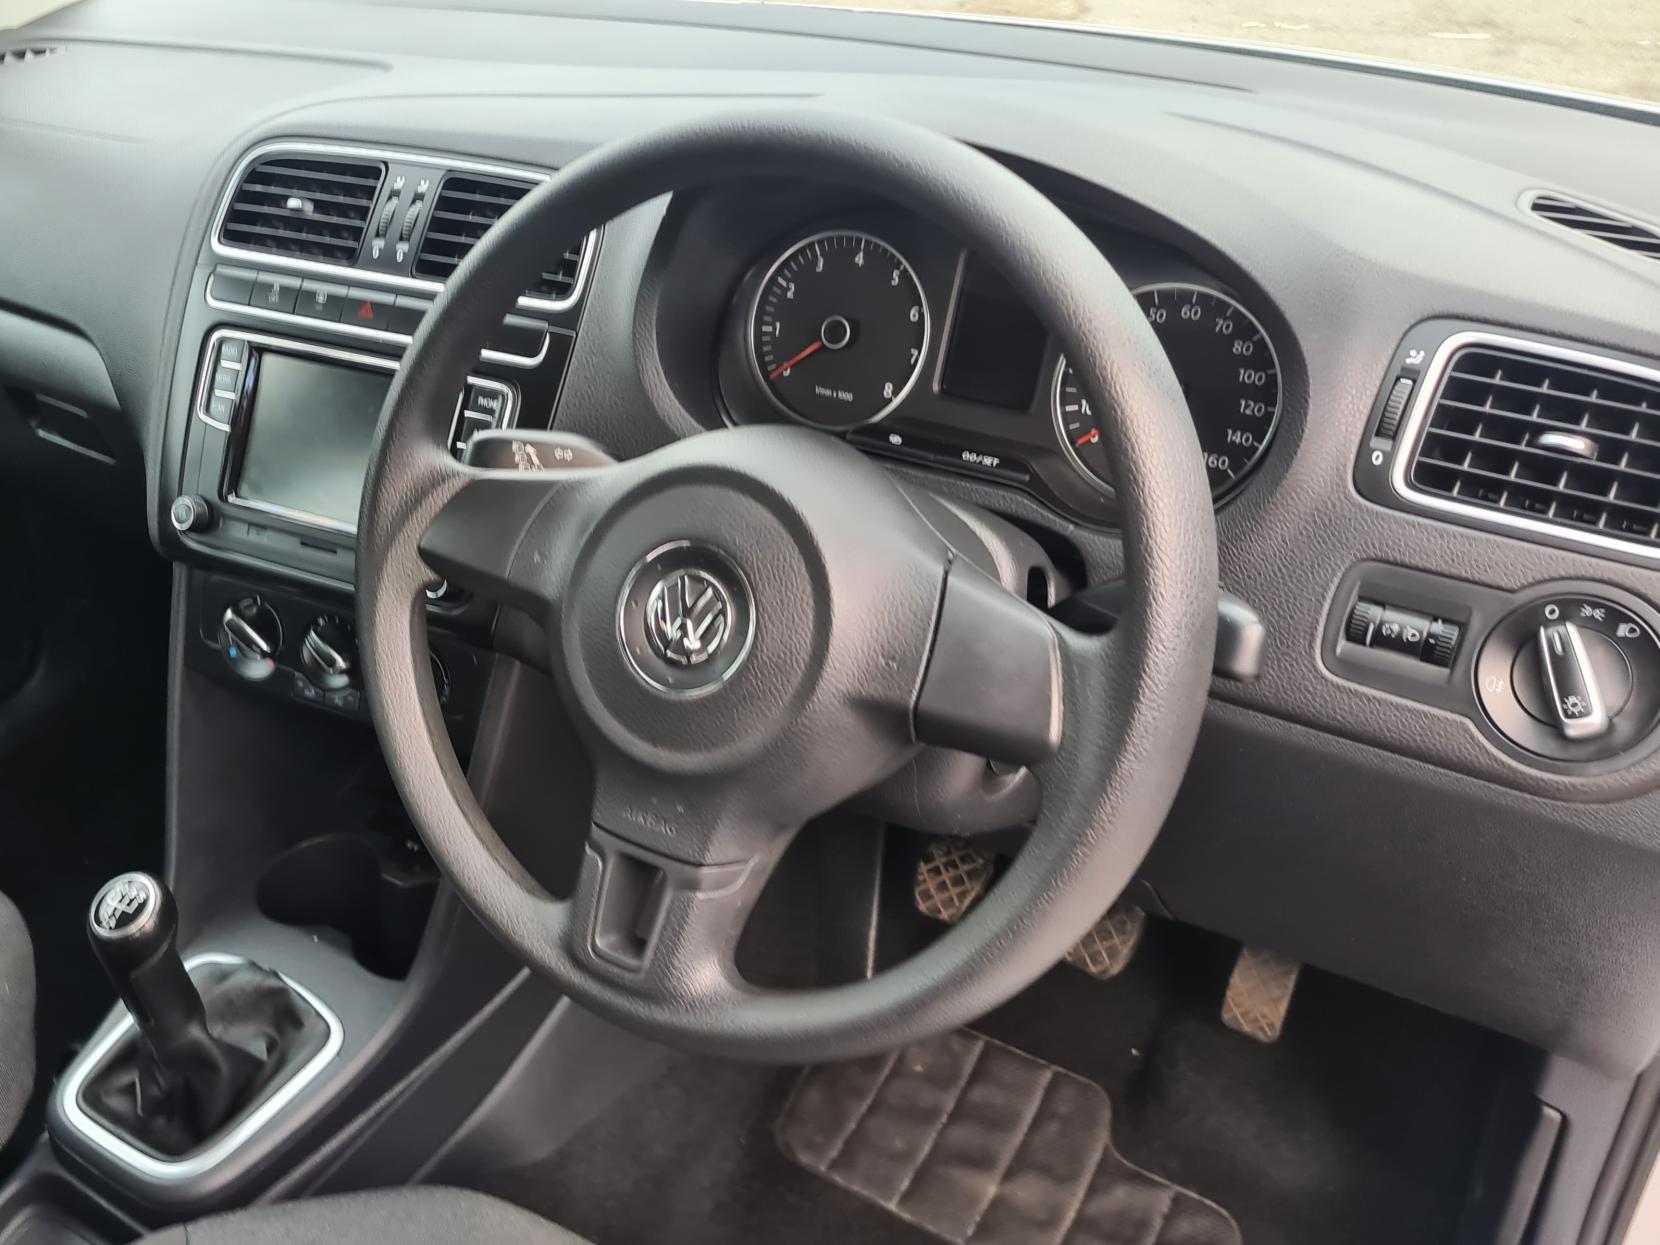 Volkswagen Polo 1.4 SE Hatchback 5dr Petrol Manual Euro 5 (85 ps)